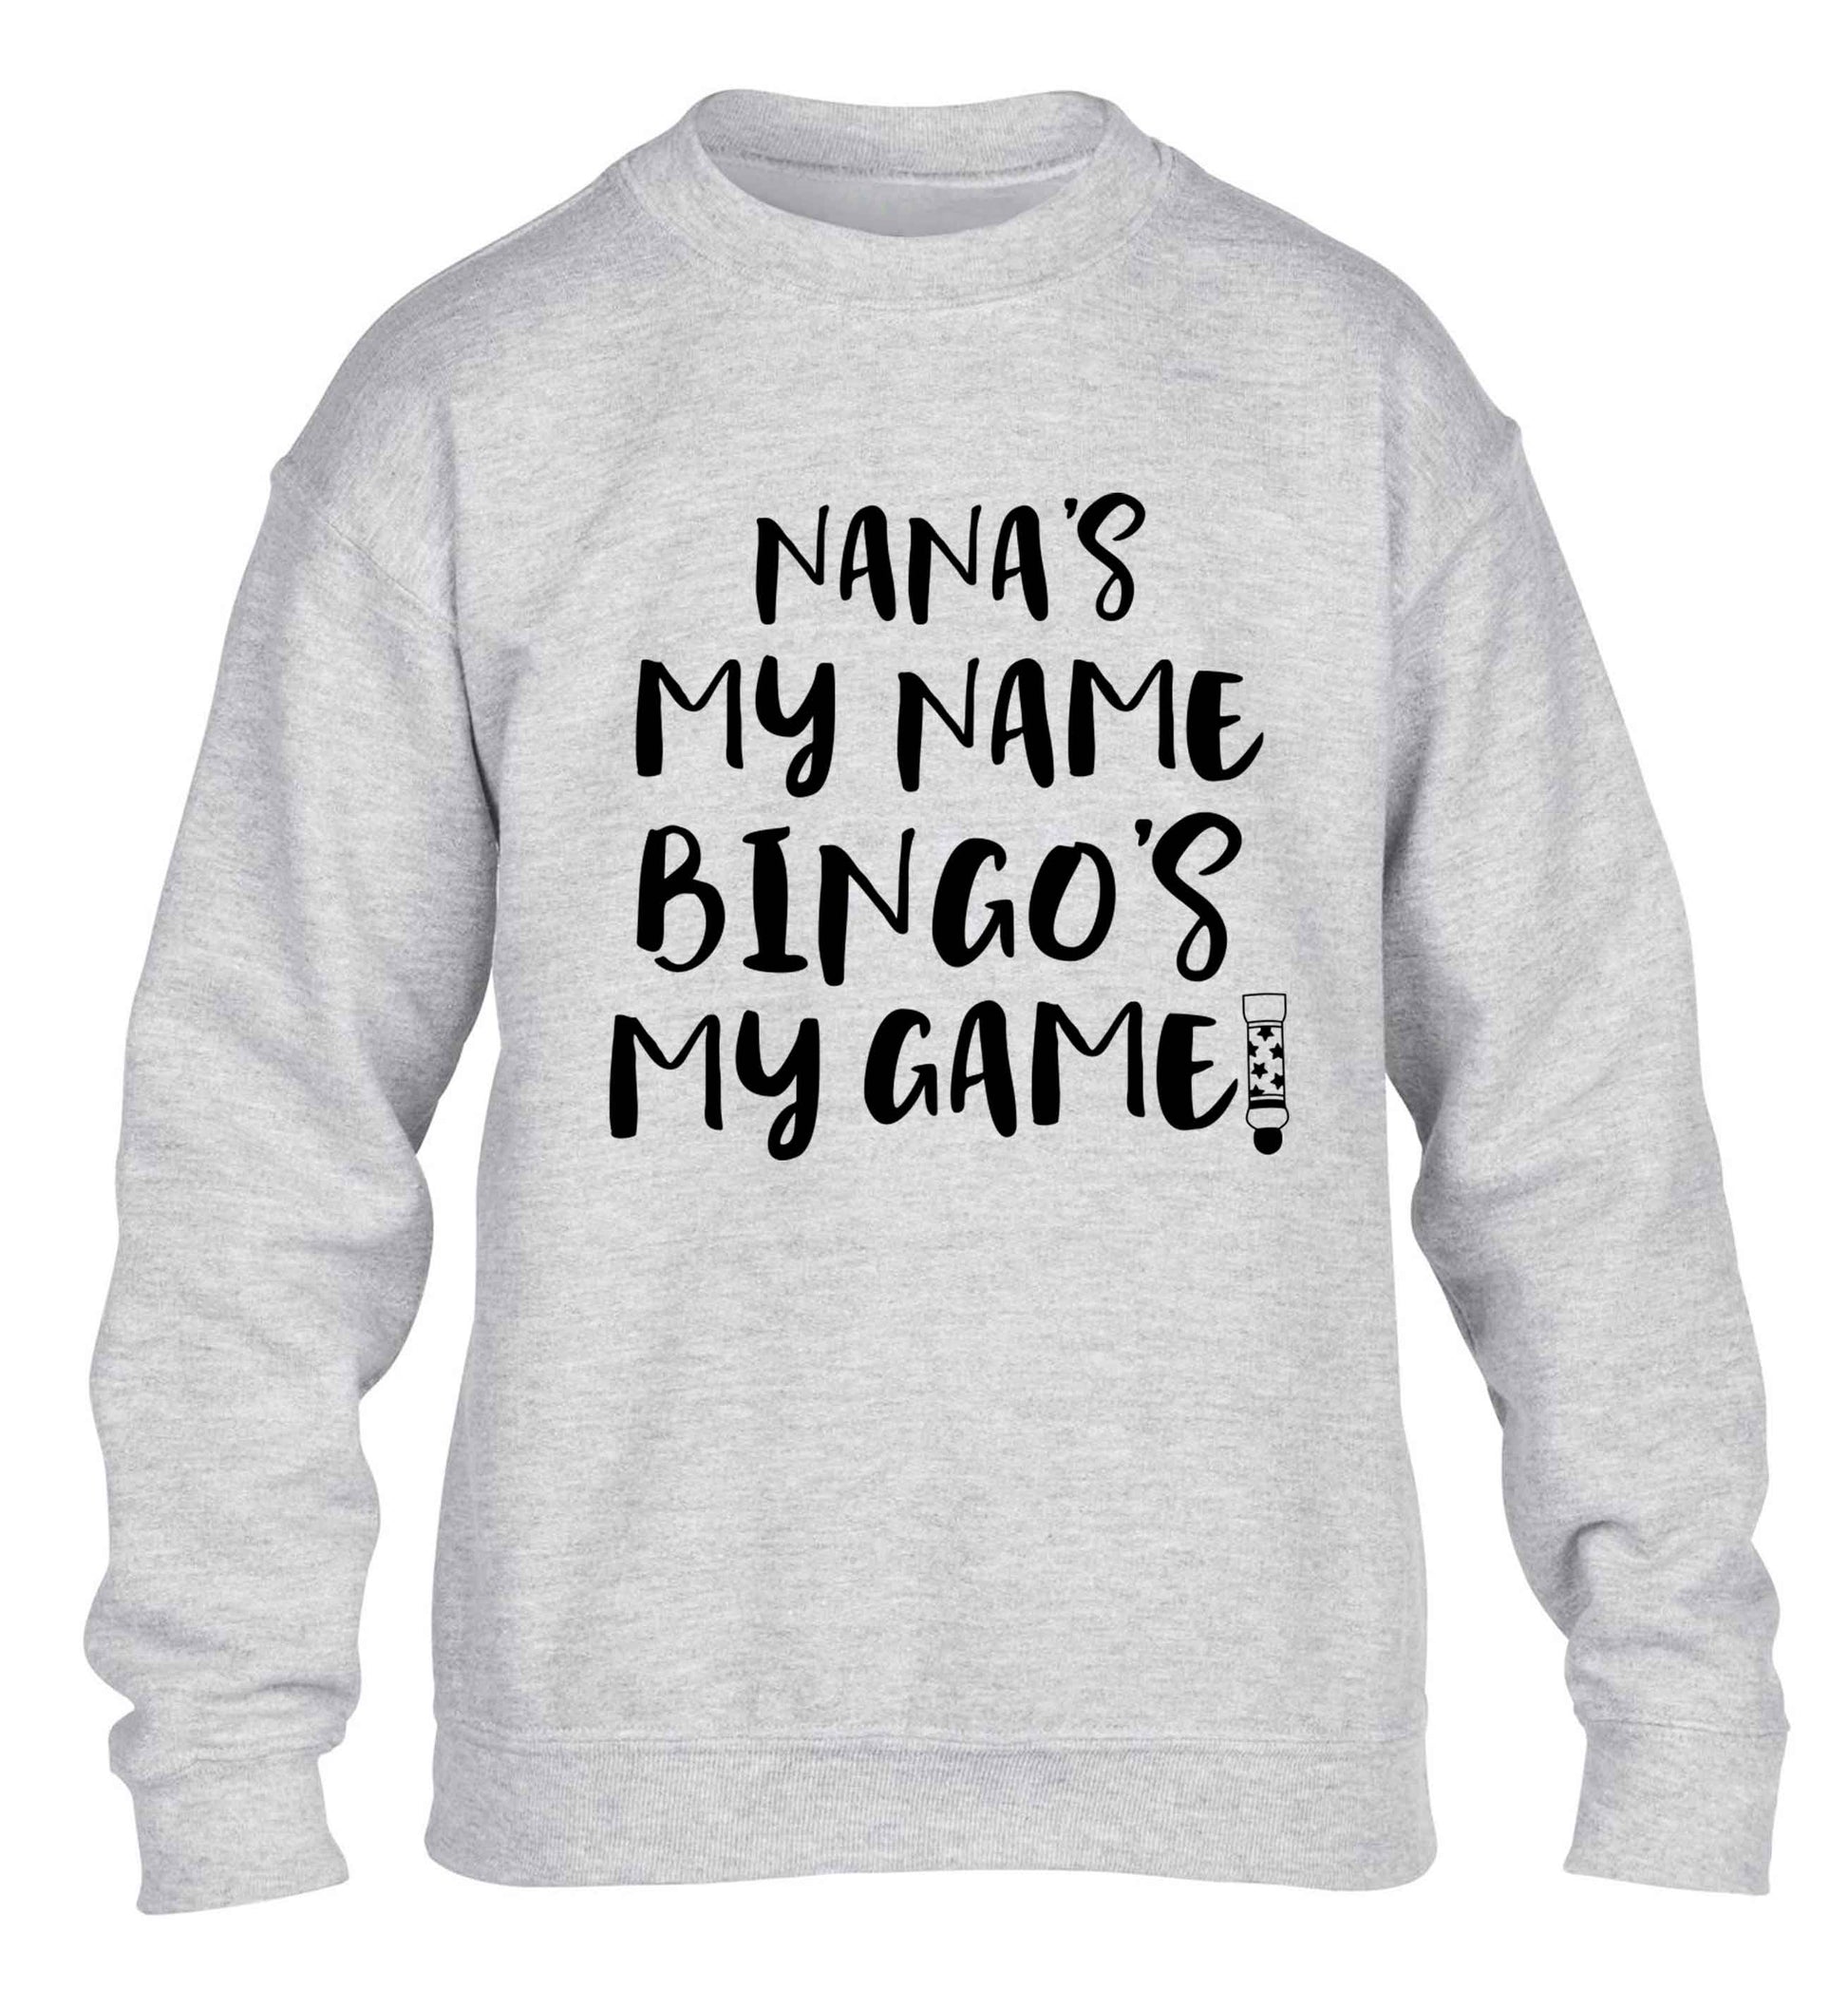 Nana's my name bingo's my game! children's grey sweater 12-13 Years